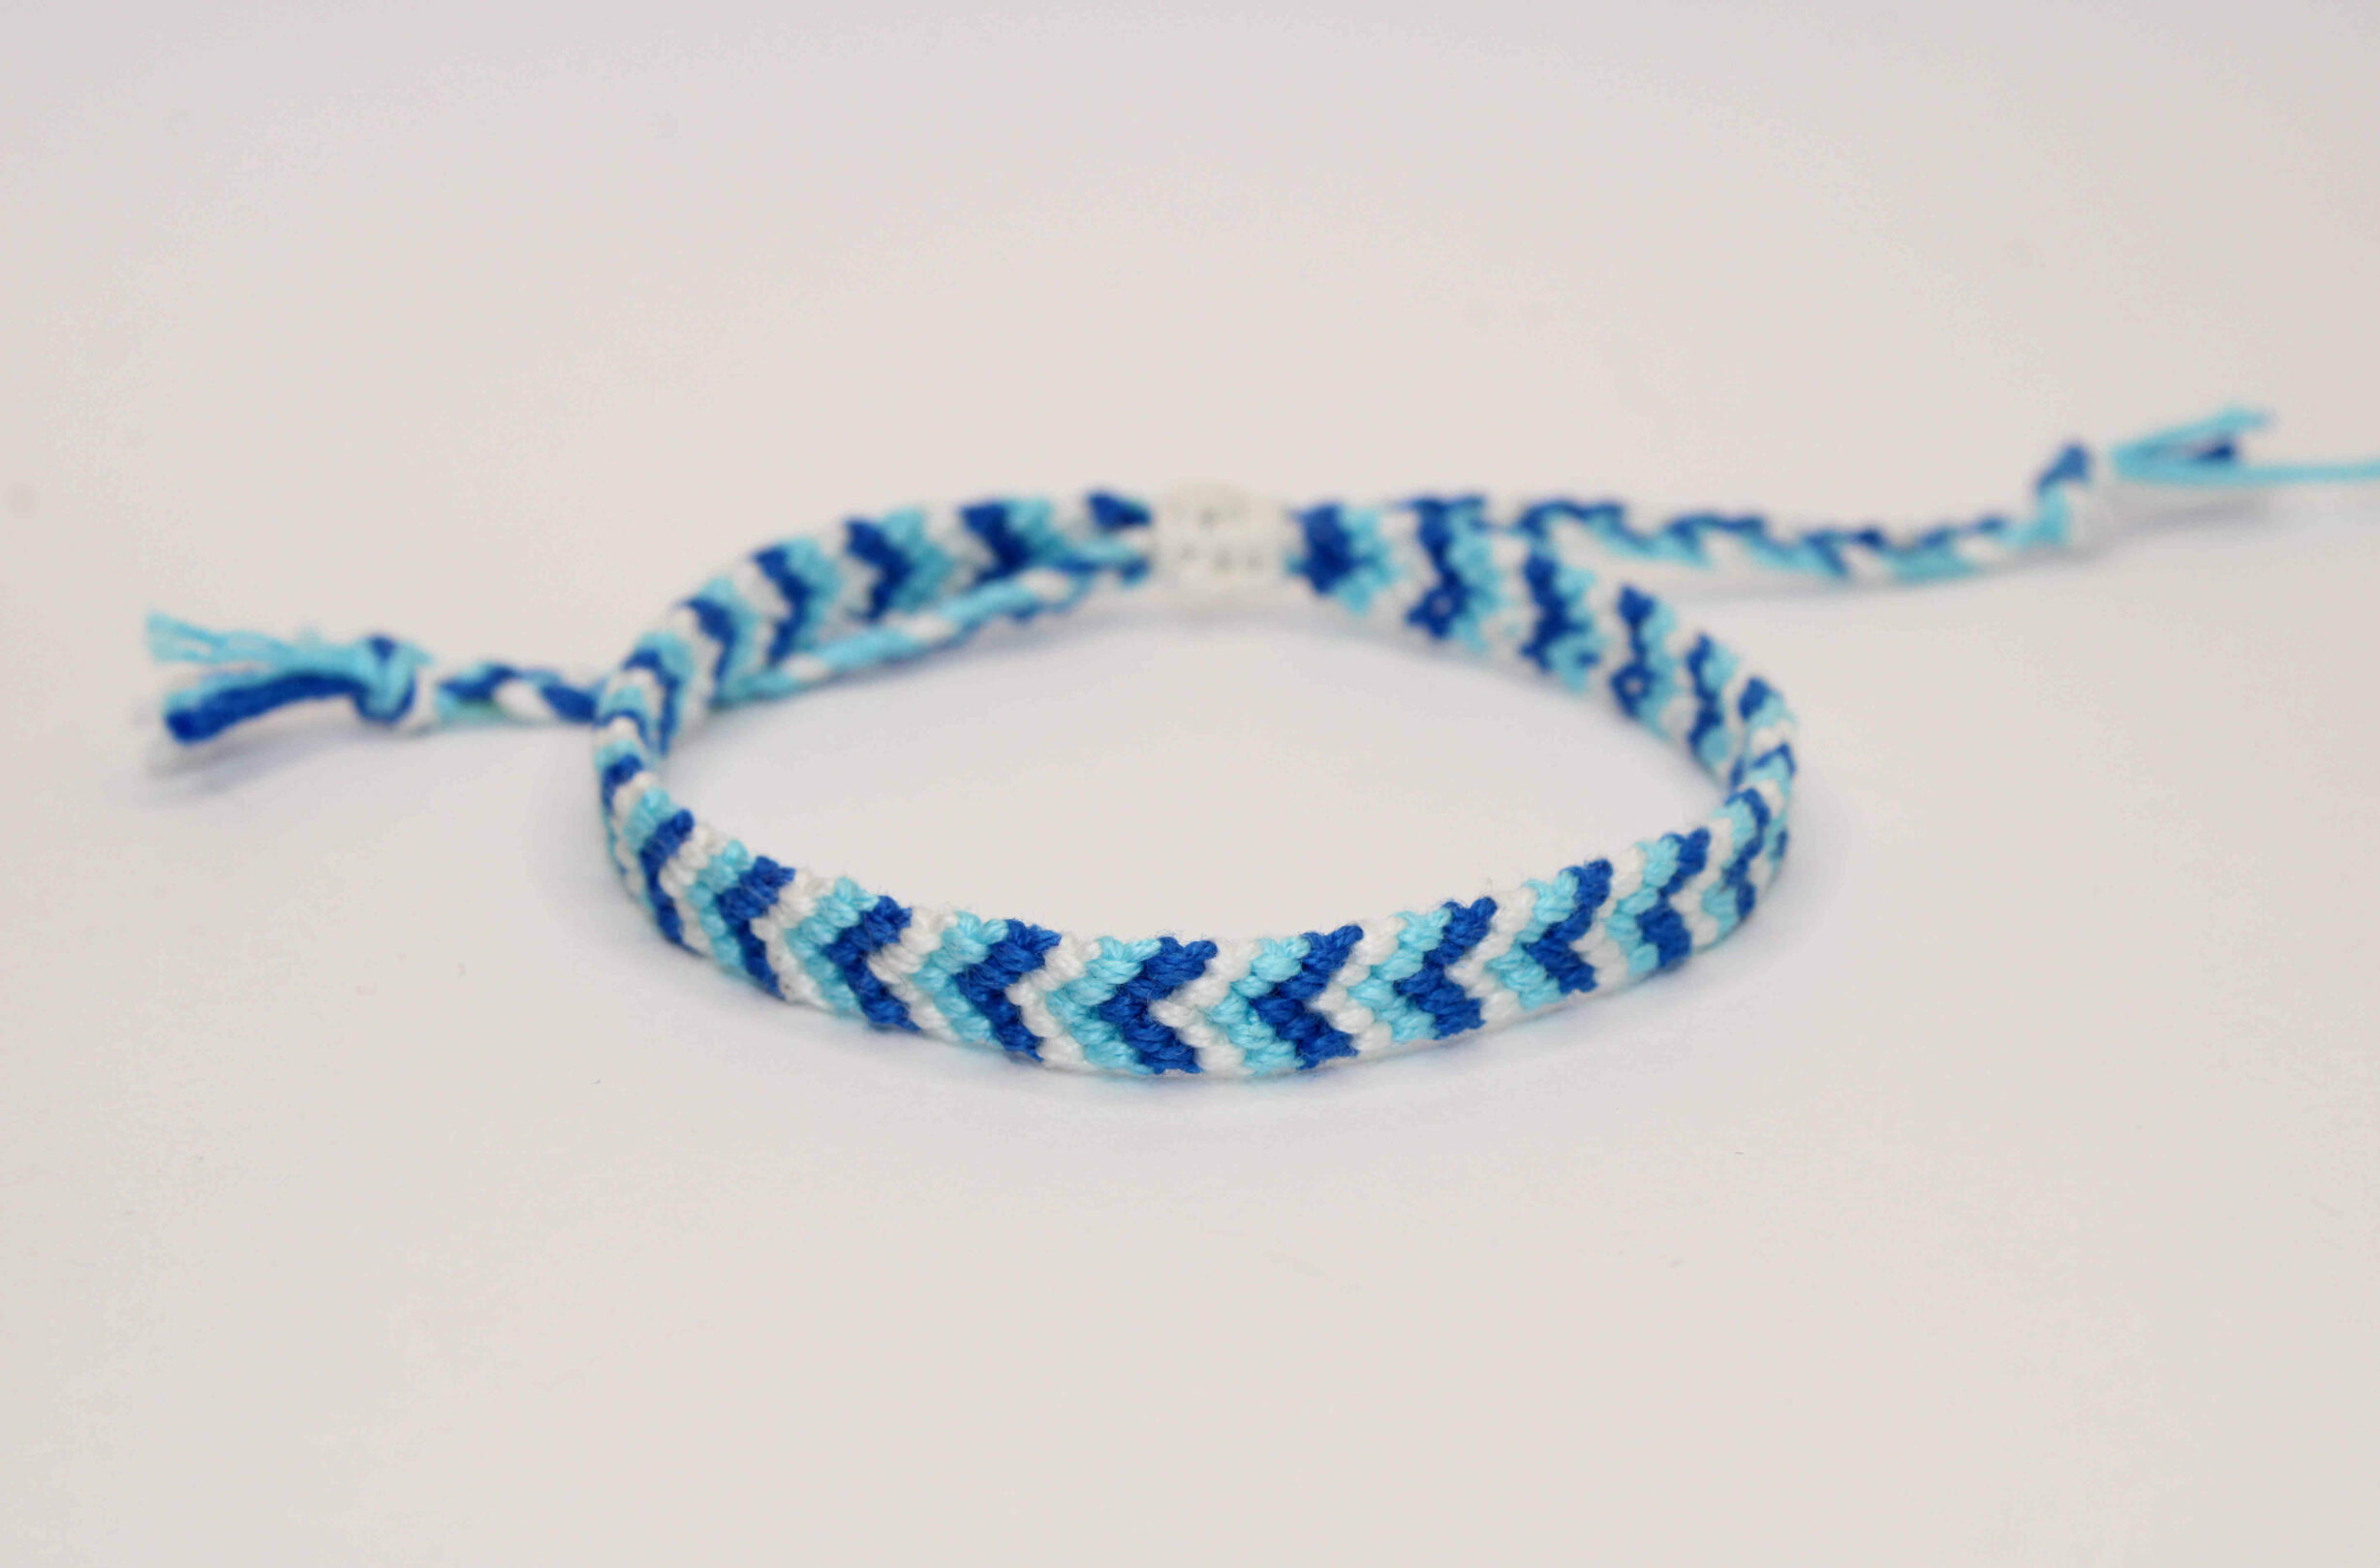 comment faire un bracelet brésilien en forme de tresse (DIY Friendship  bracelet braided stitch) - YouTube